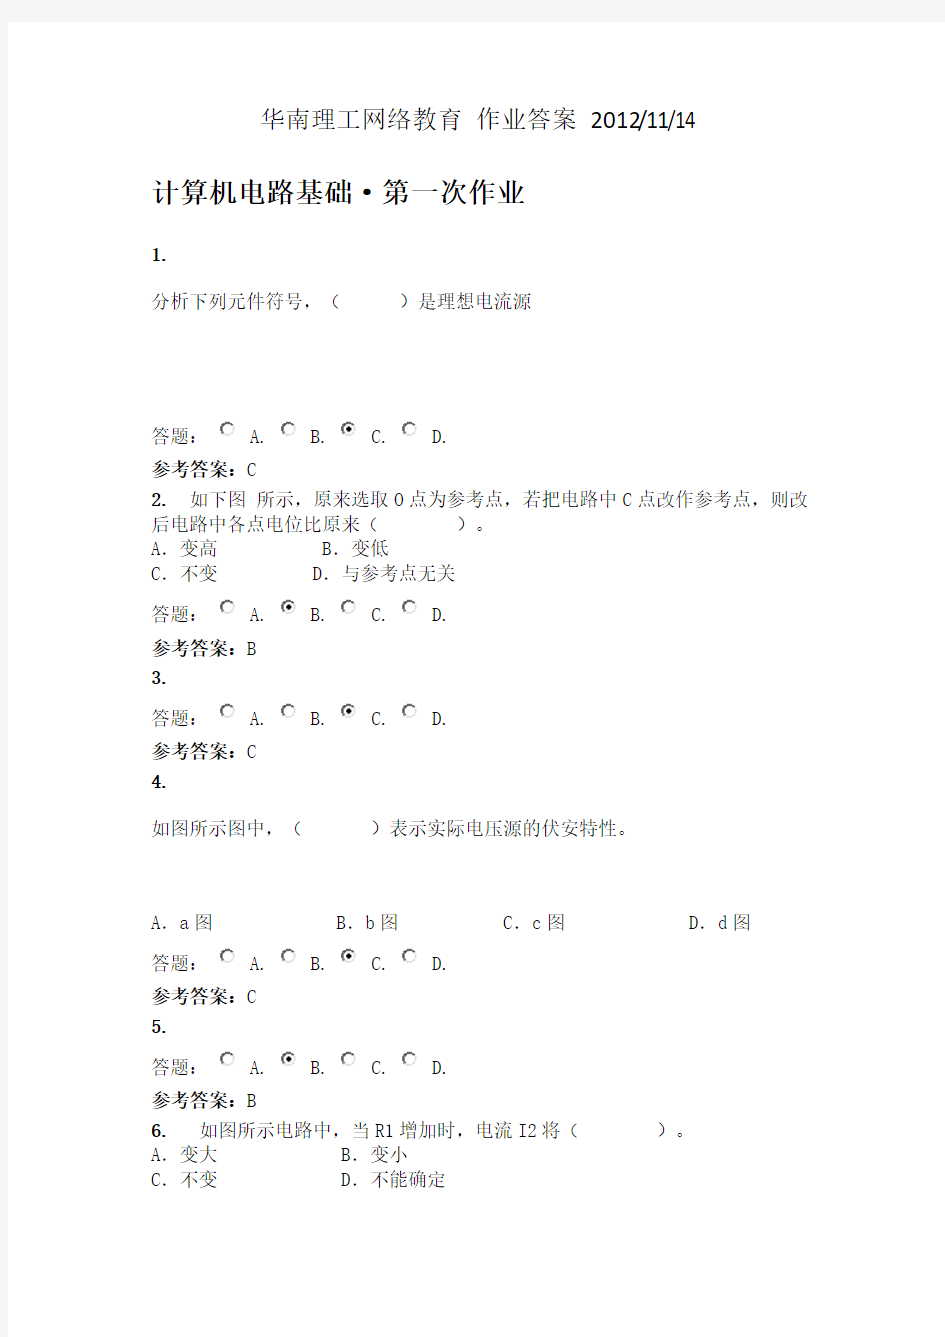 华南理工网络教育 计算机电路基础 第一次作业 答案